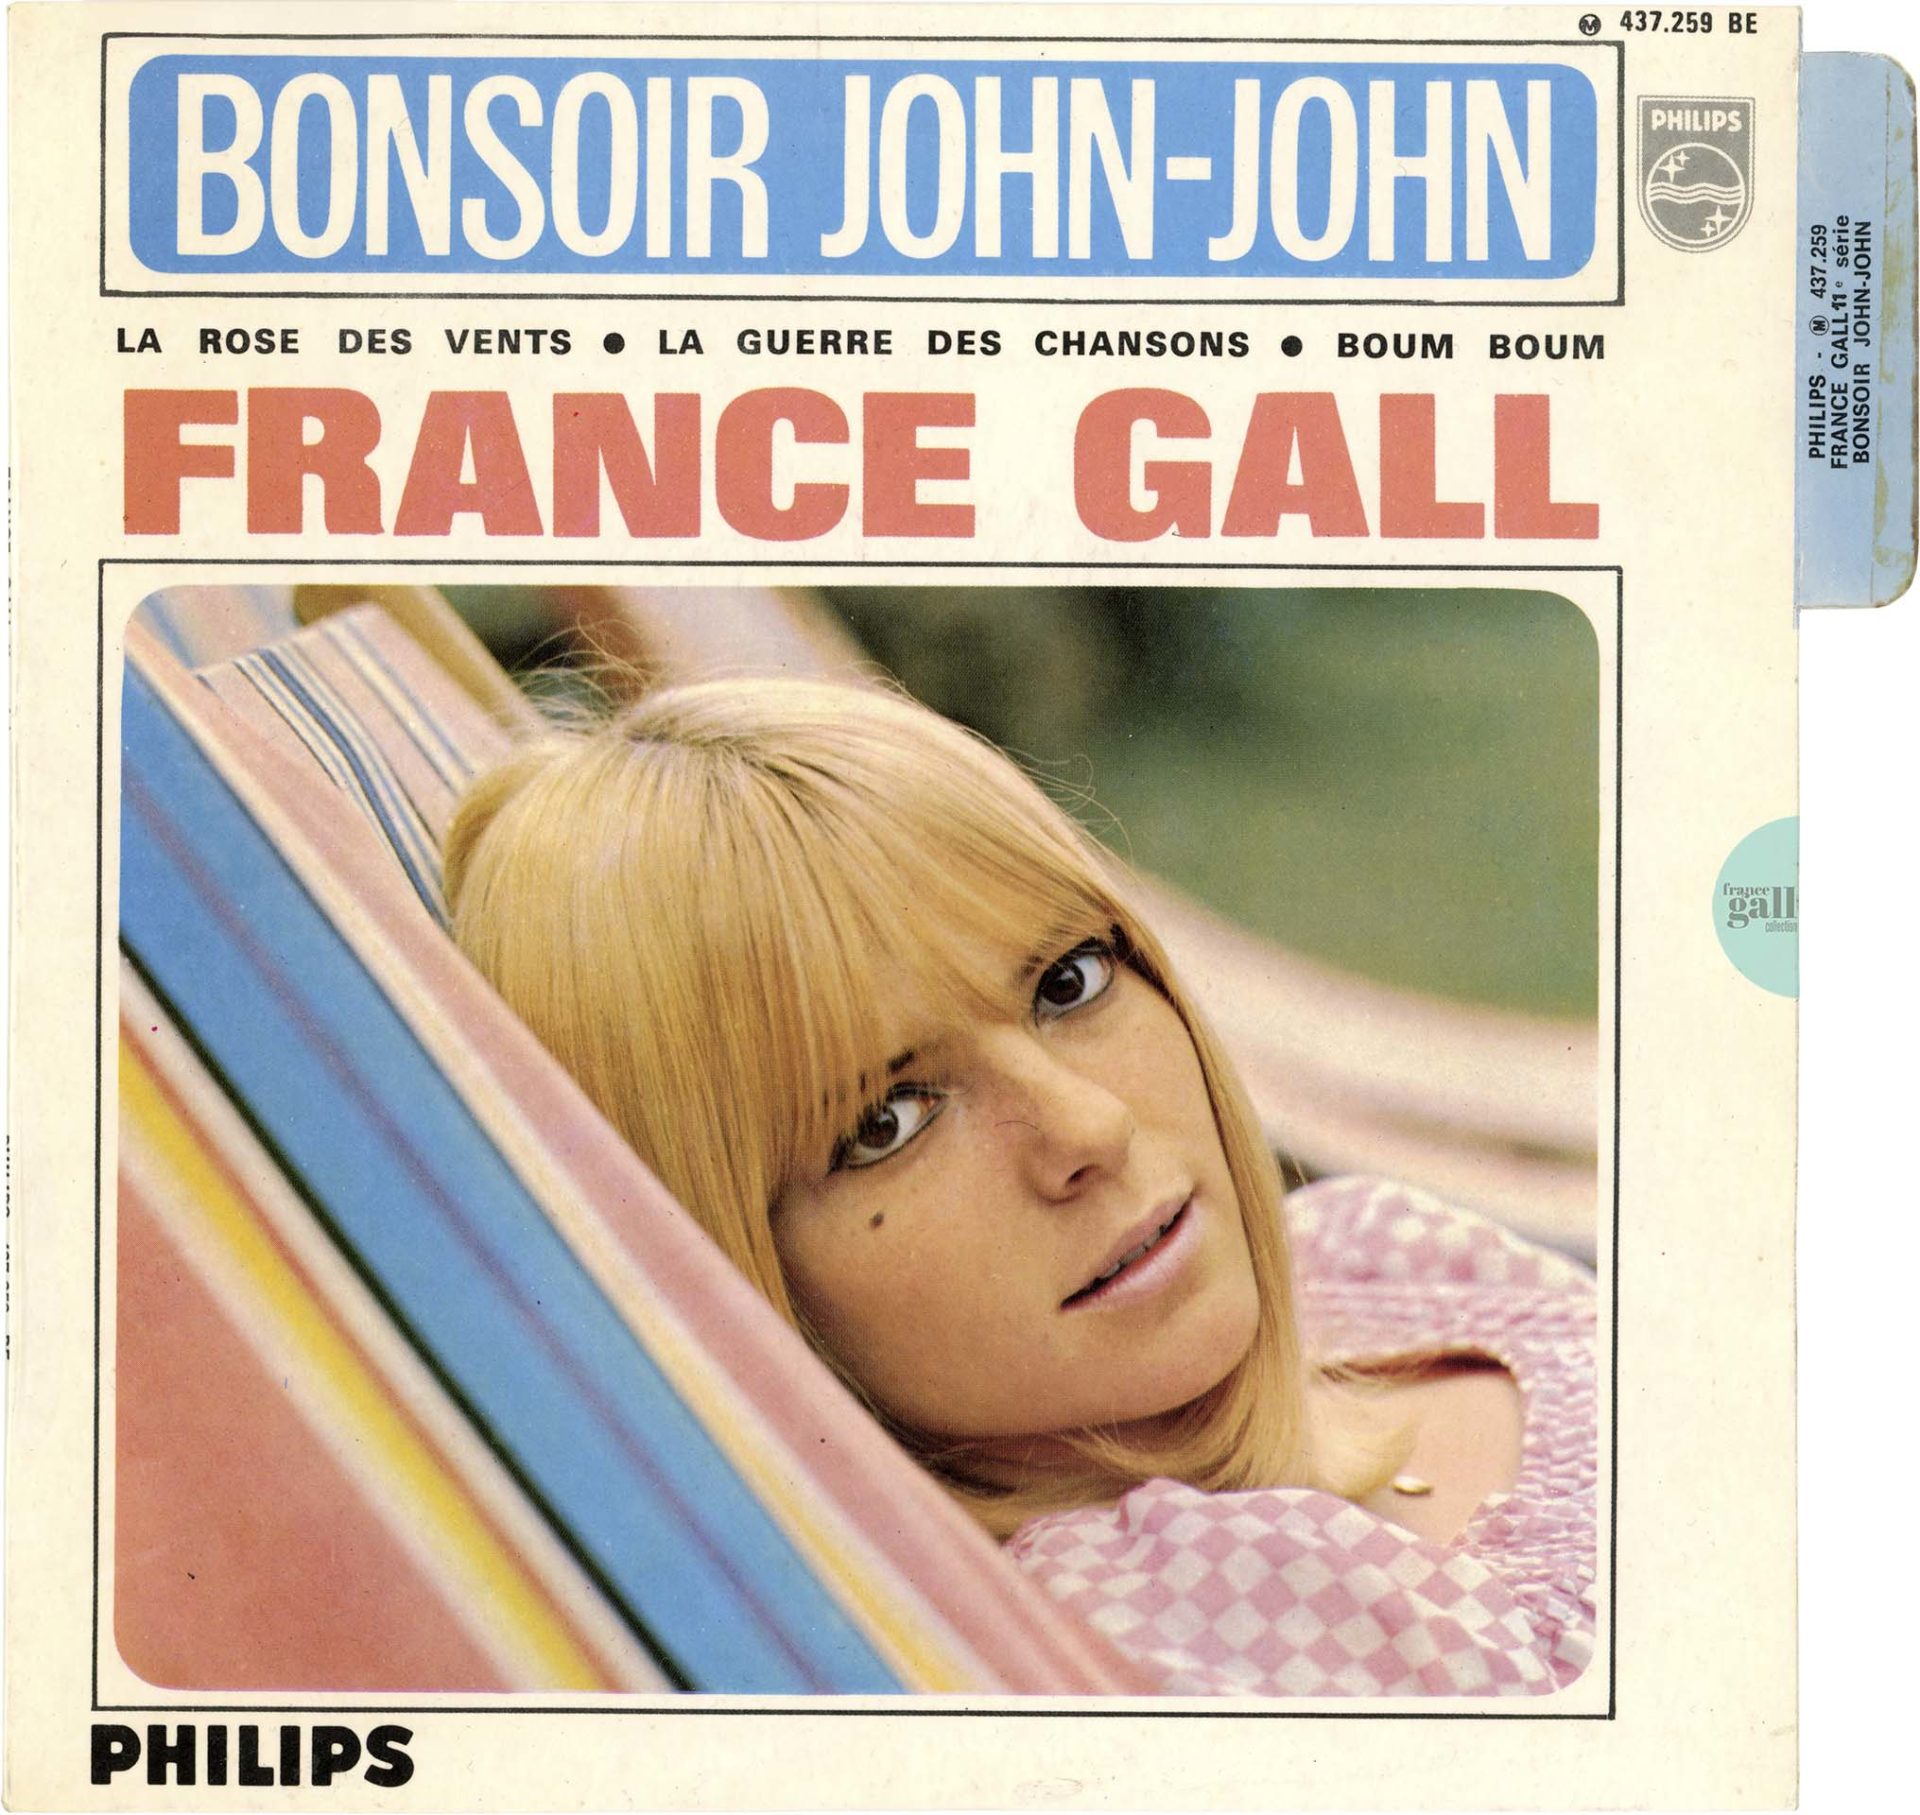 Ce super 45 tours de France Gall, paru en octobre 1966, contient les titres Bonsoir John-John, La rose des vents, La guerre des chansons et Boom boom.